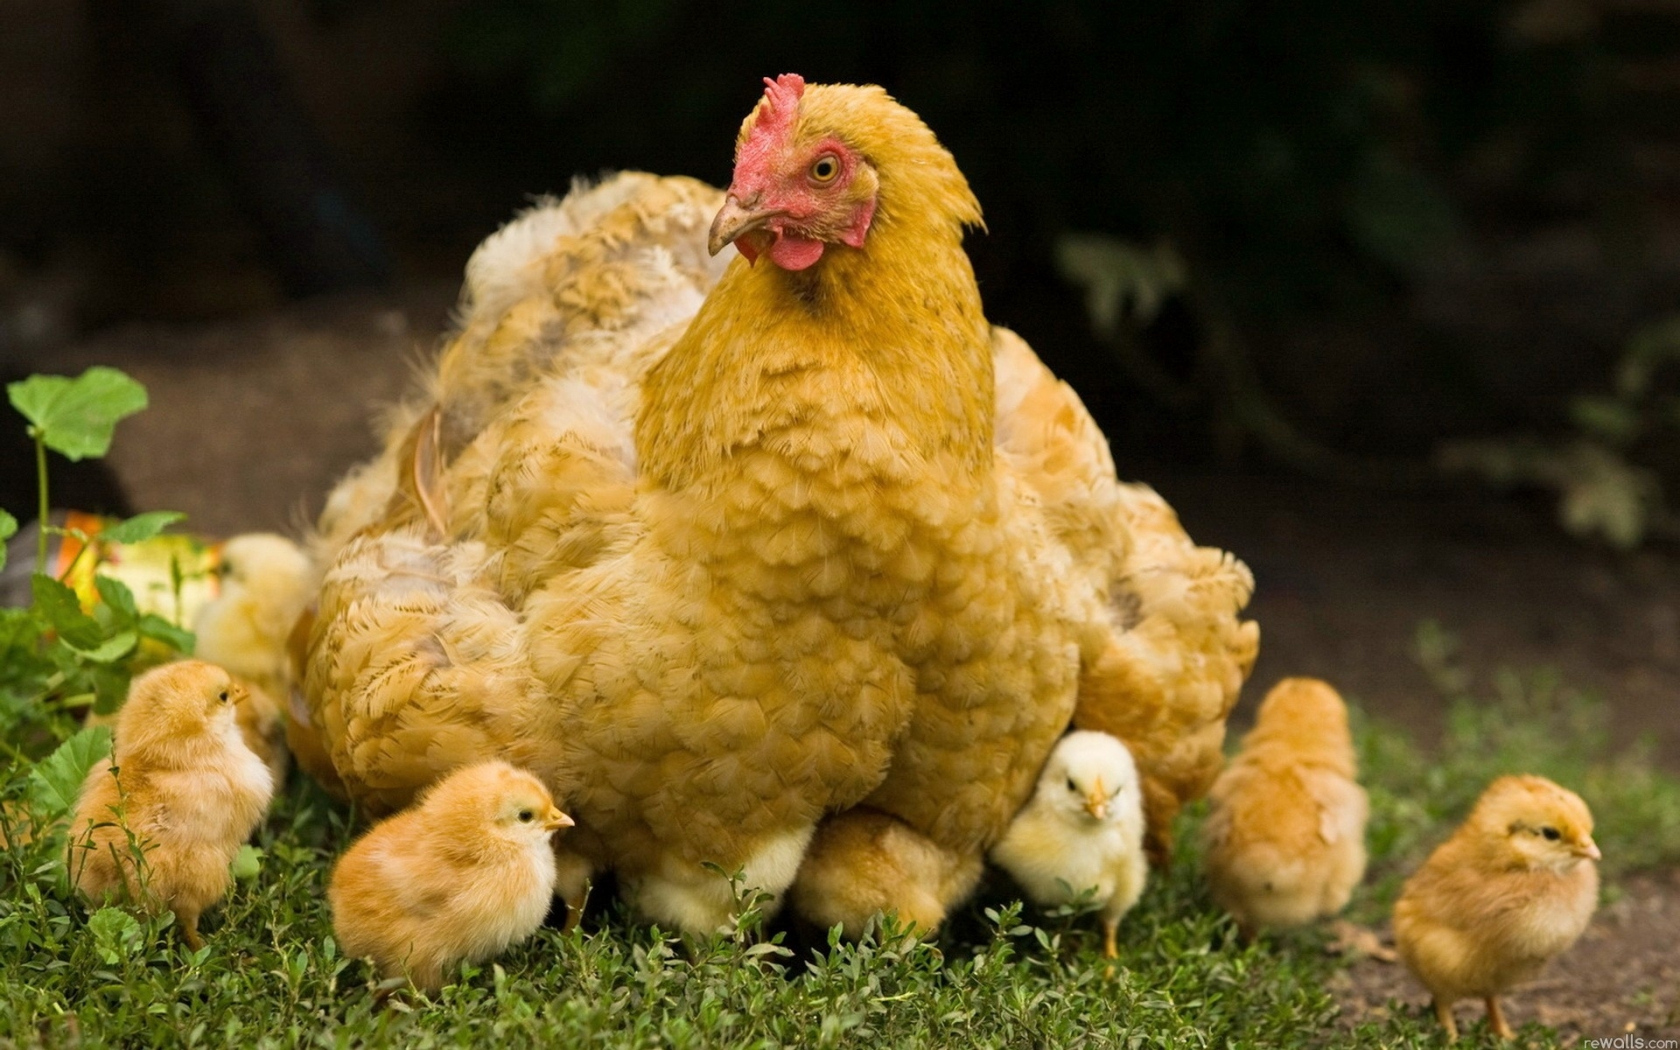  میزان جوجه درآوری در مرغ های مادر گوشتی 